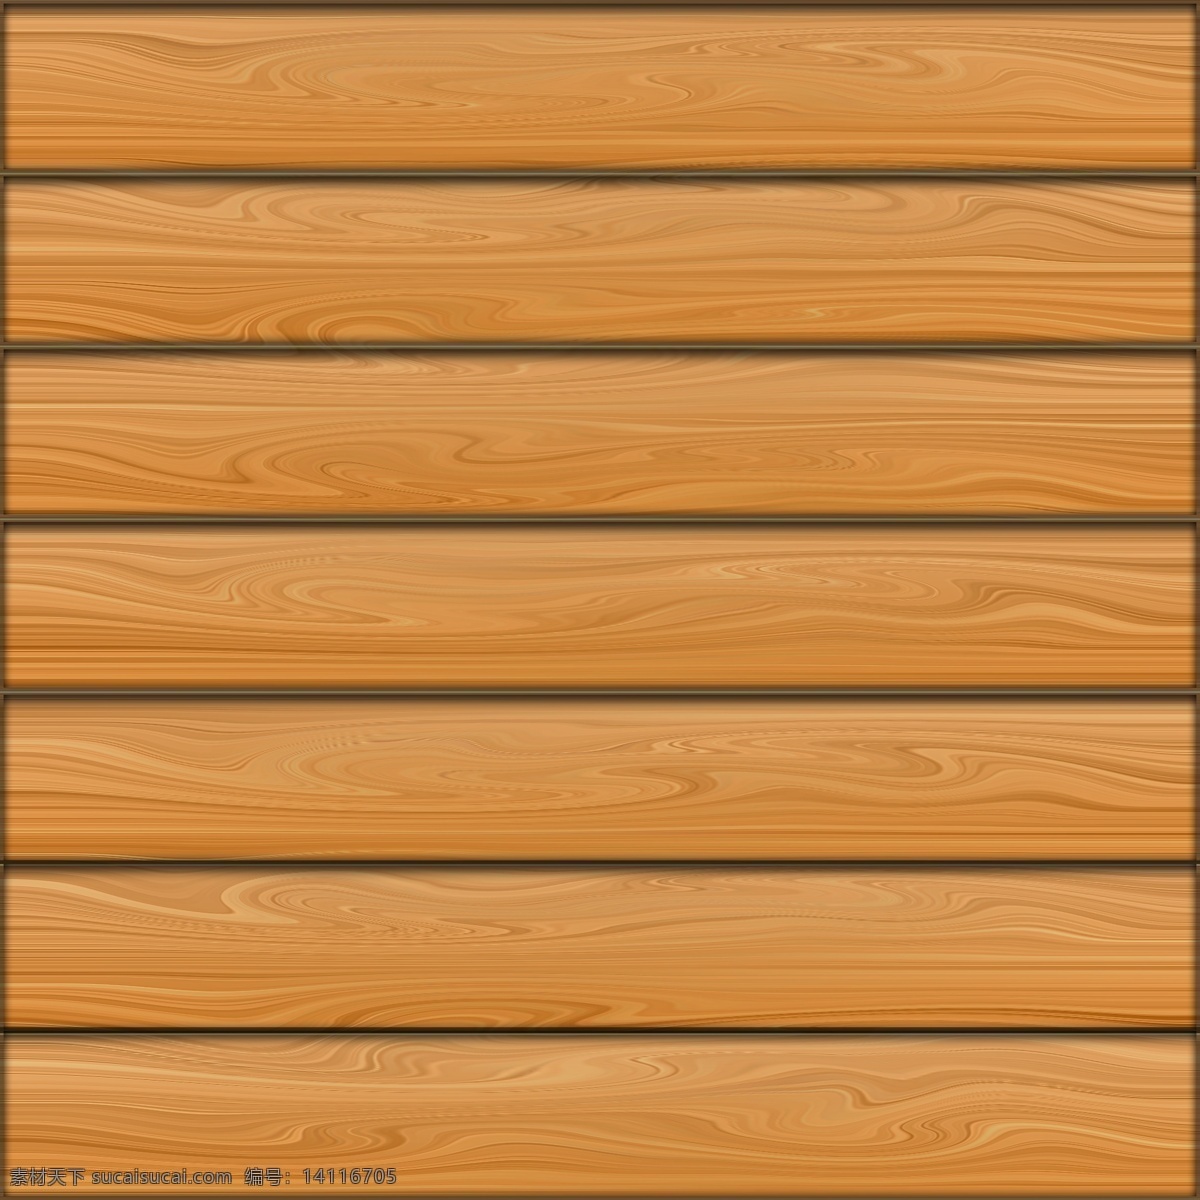 朽木 木板 木材老朽木纹 老朽 表面纹理 横条纹 枯木 集成吊顶 扣板 壁纸 木纹纸 封边条 木纹素材 木纹图